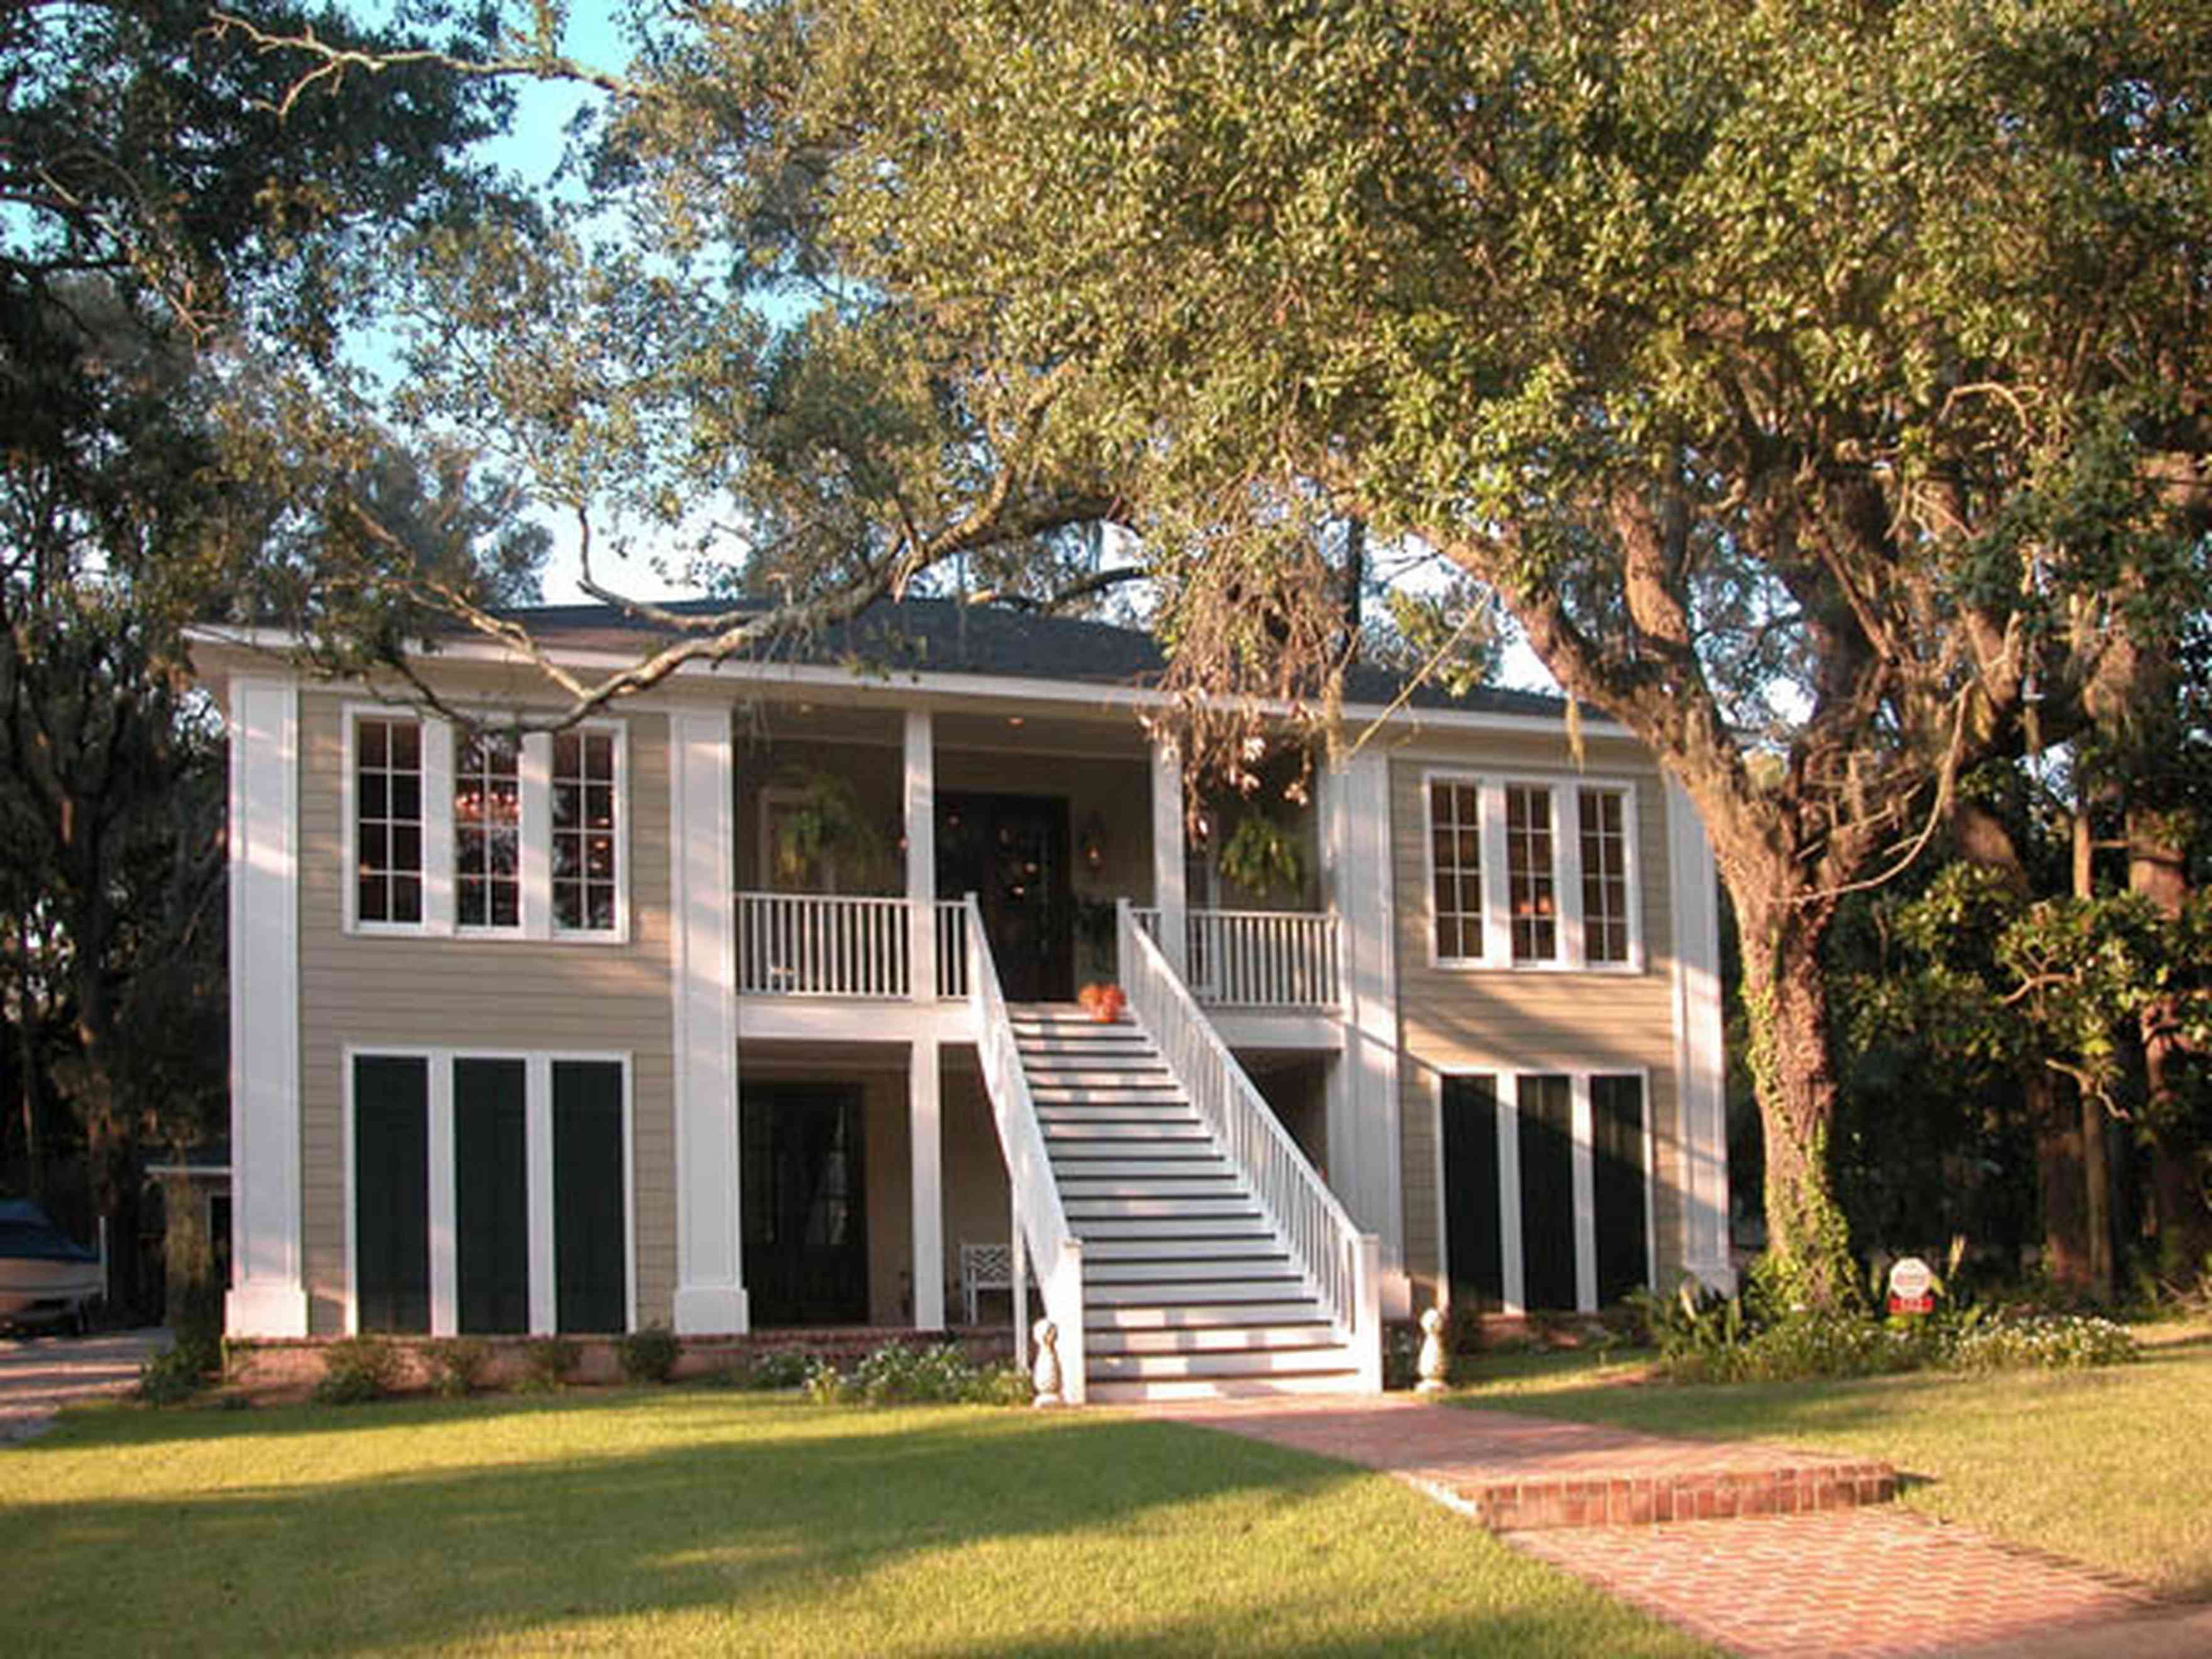 East-Pensacola-Heights:-112-Chipley-Avenue_01.jpg:  oak tree, raised cottage, pyramidal roof, brick sidewalk